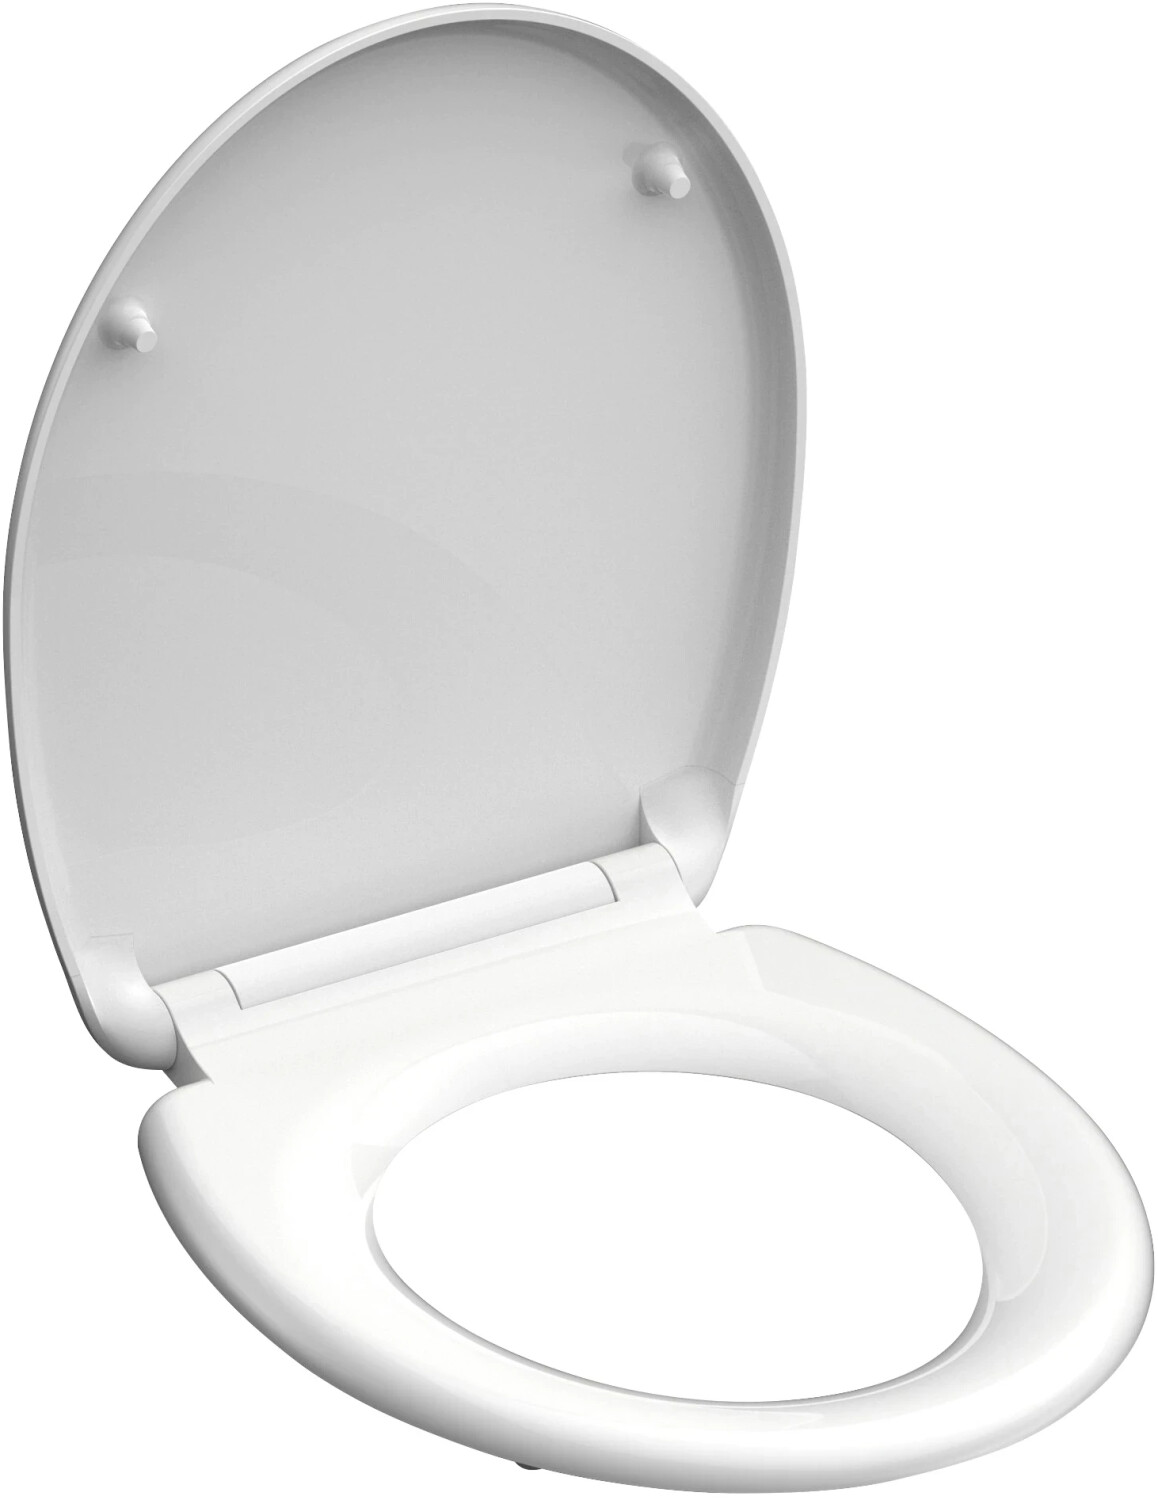 bei ab | WC-Sitz Duroplast € Preisvergleich cm 18,00 37,4 Schütte x 45,3 Absenkautomatik mit weiß